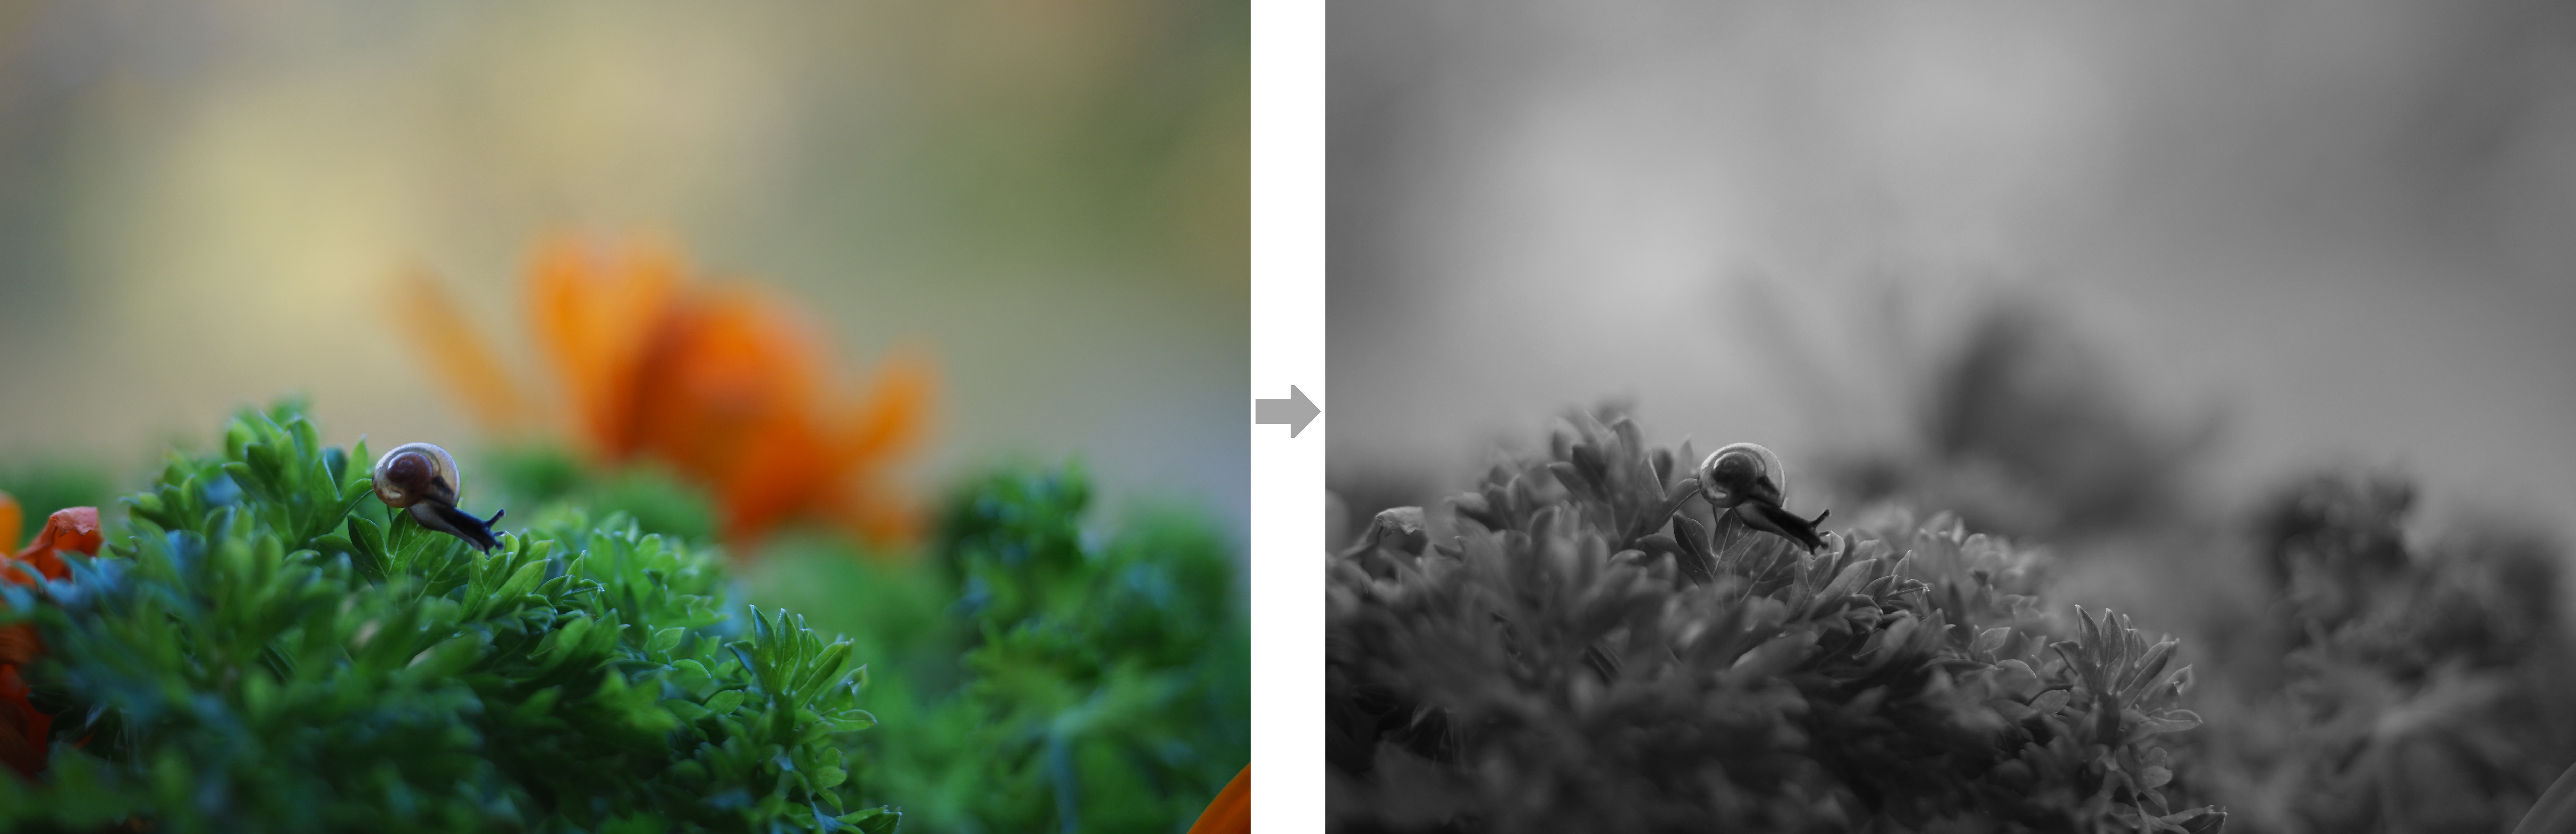 Olympus PEN-F võimaldab pilti töödelda kaamerasiseselt, näiteks saad teha pildi mustvalgeks või tõsta kontrastsust